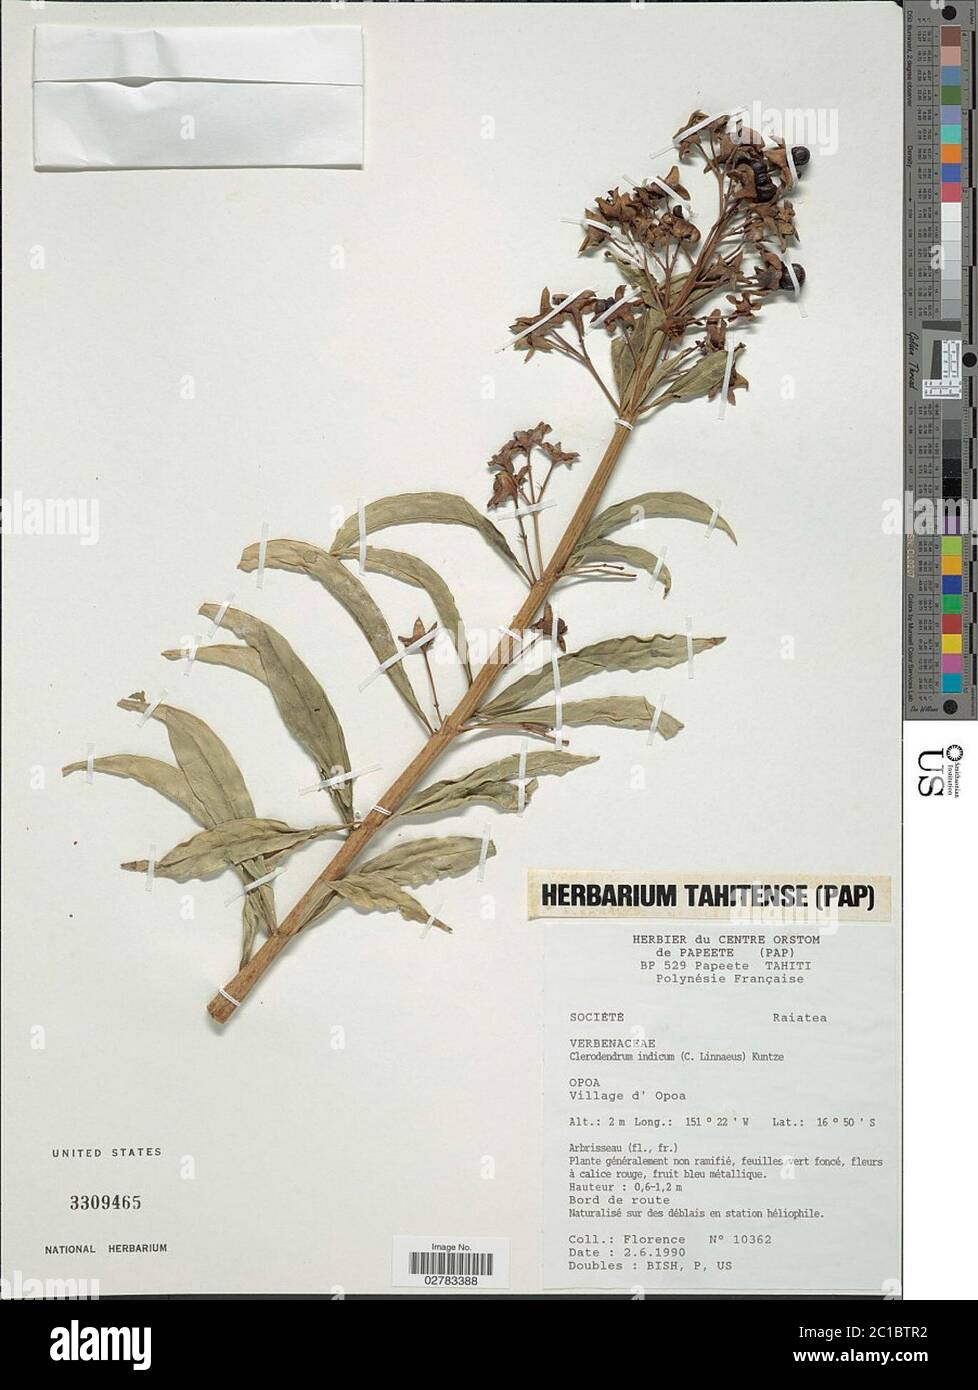 Clerodendrum indicum L Kuntze Clerodendrum indicum L Kuntze. Stock Photo